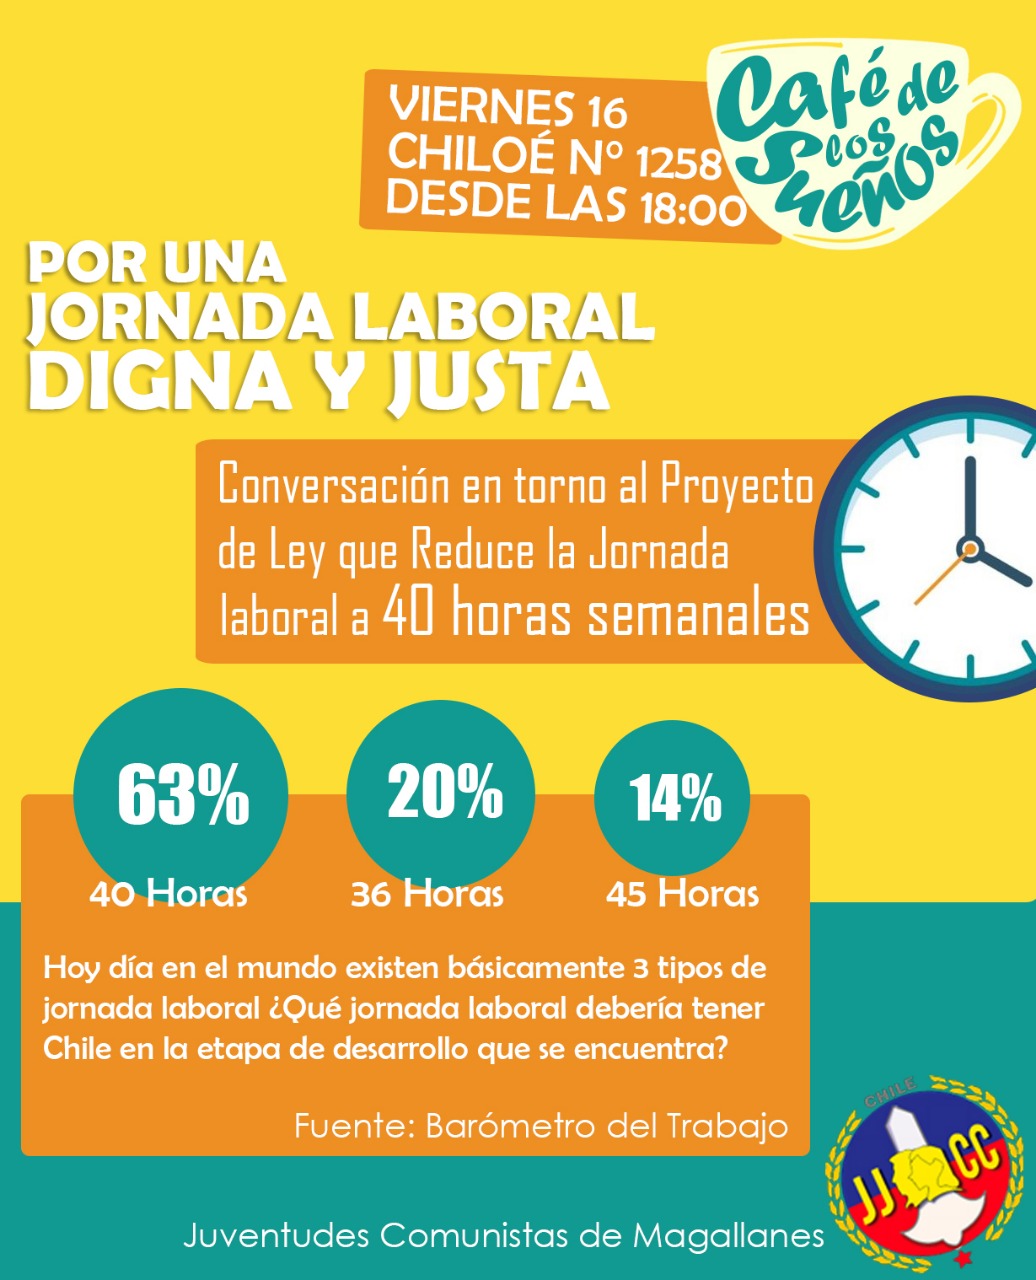 Conversatorio sobre el proyecto de las 40 horas laborales se realizará en Punta Arenas este jueves 16